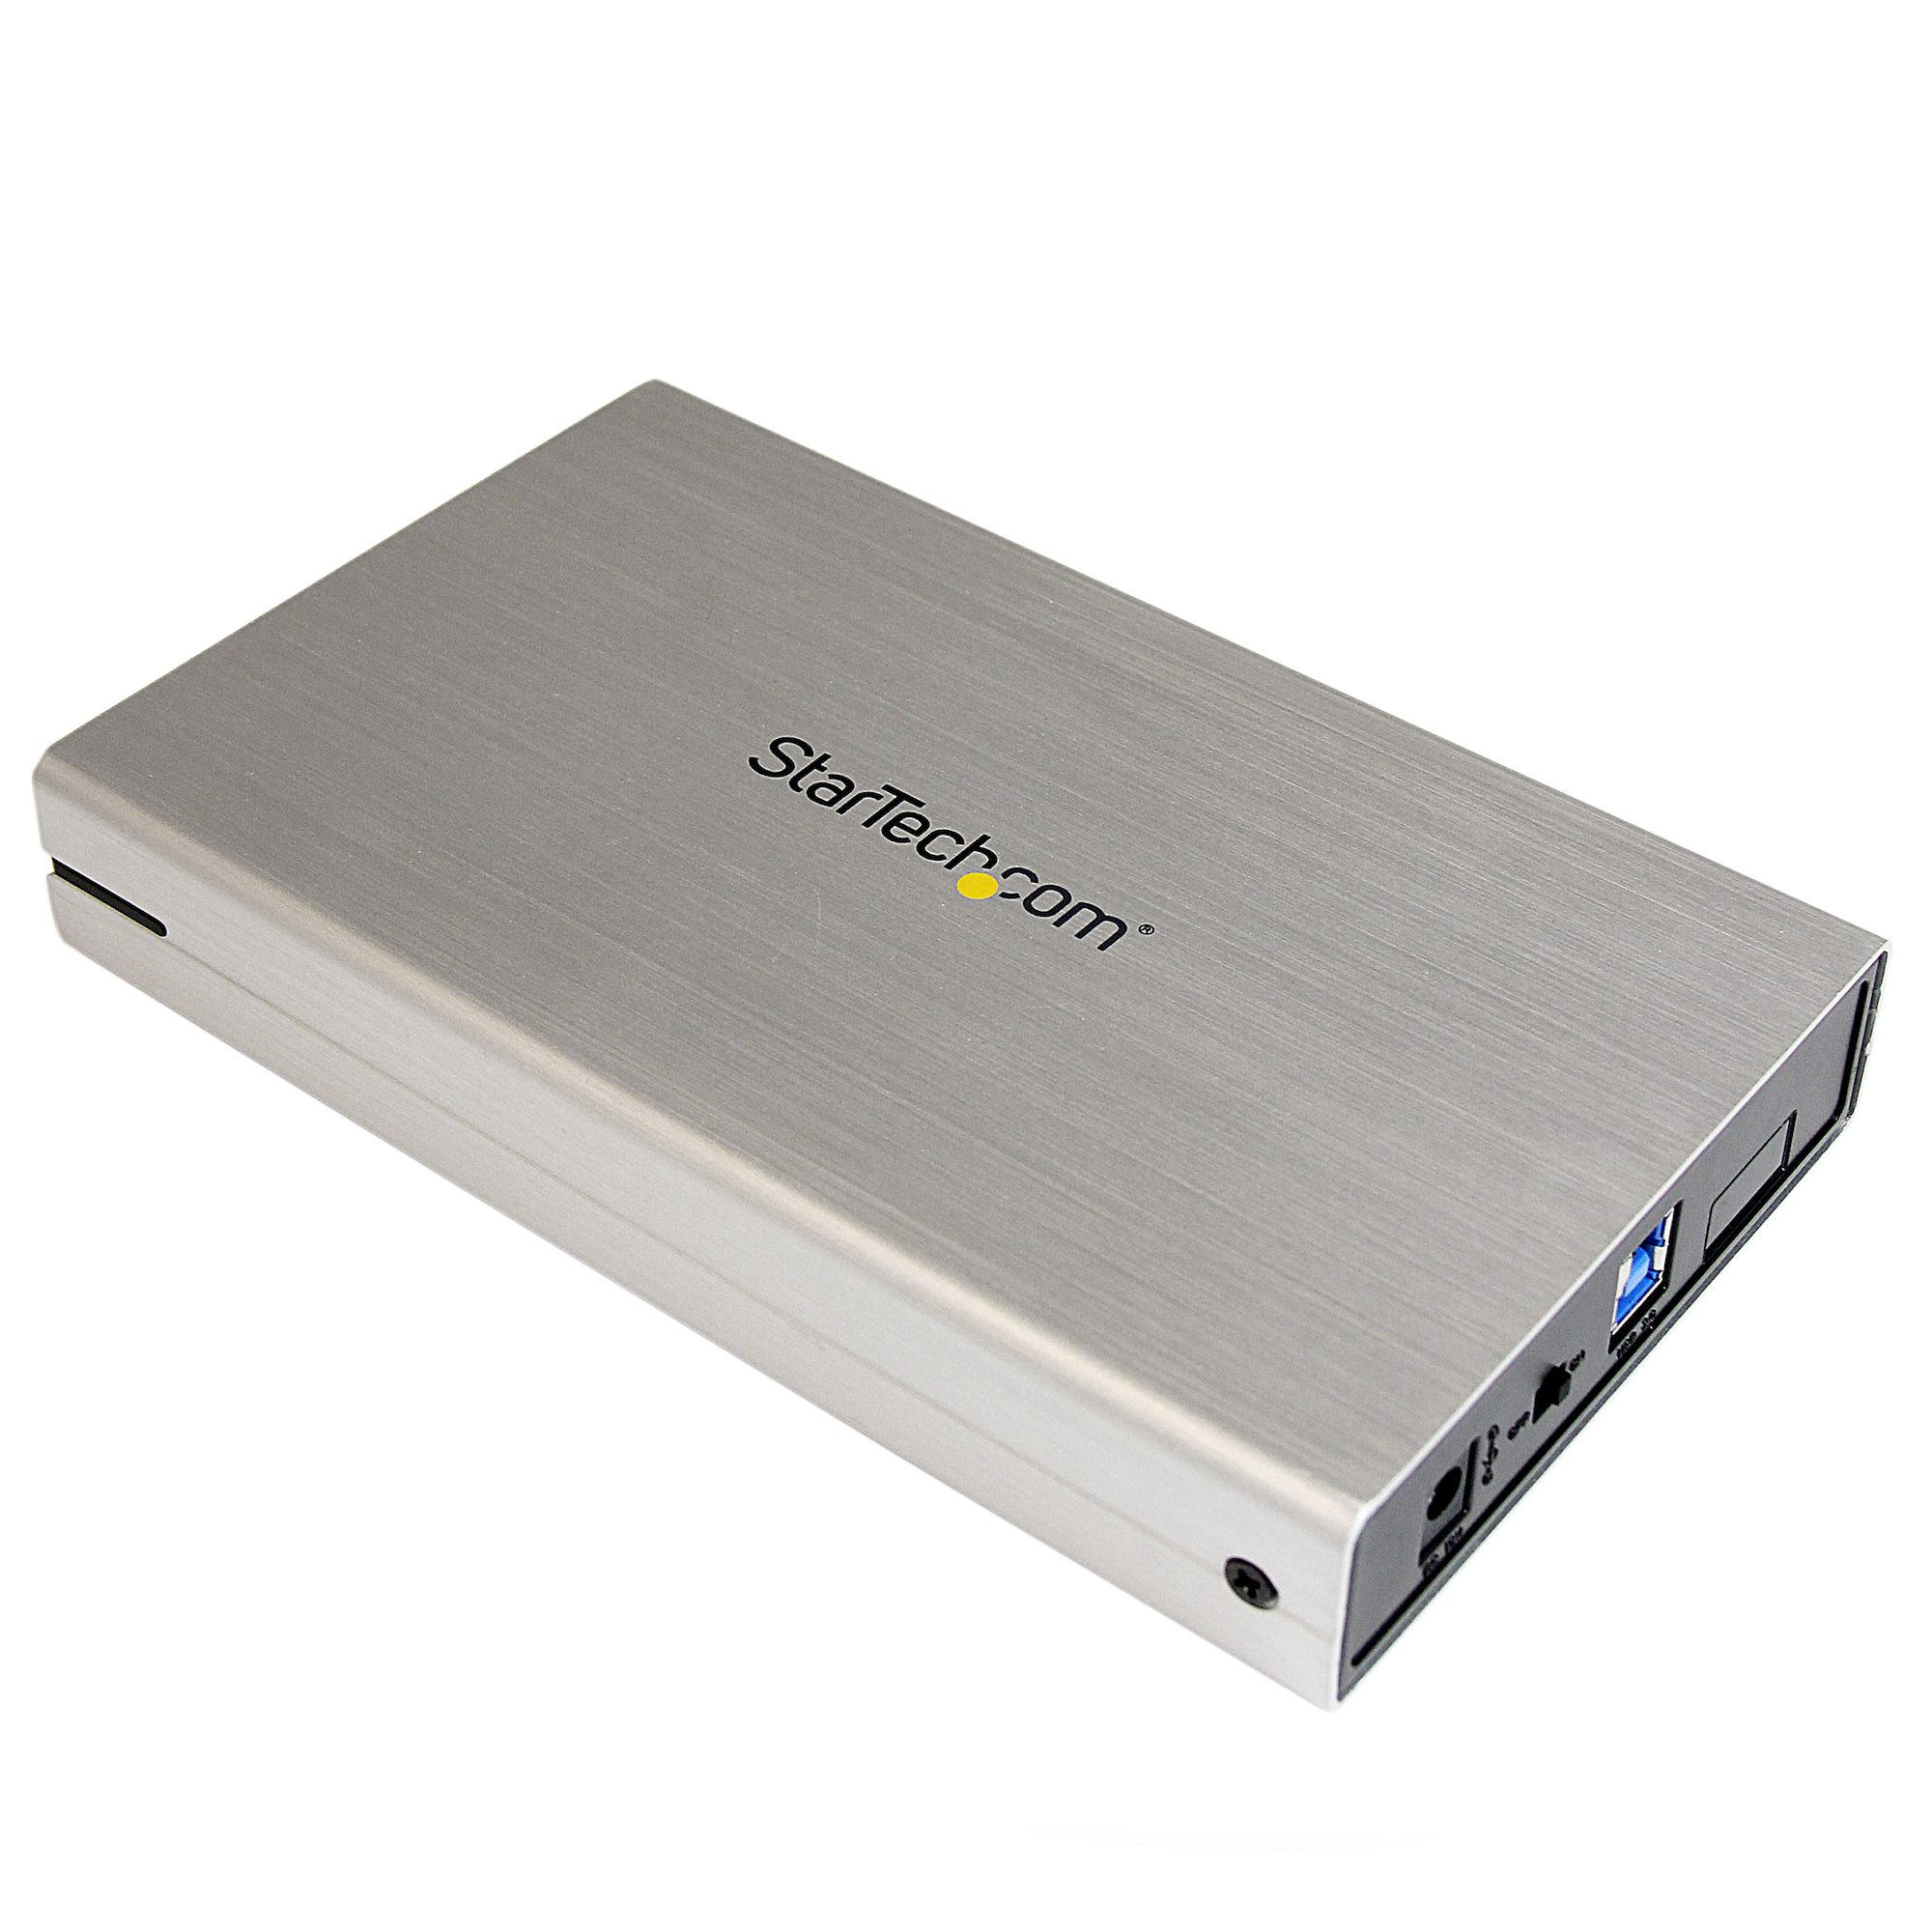 USB 3.0 2.5 SATA 6Gb/s UASP External Hard Drive Enclosure